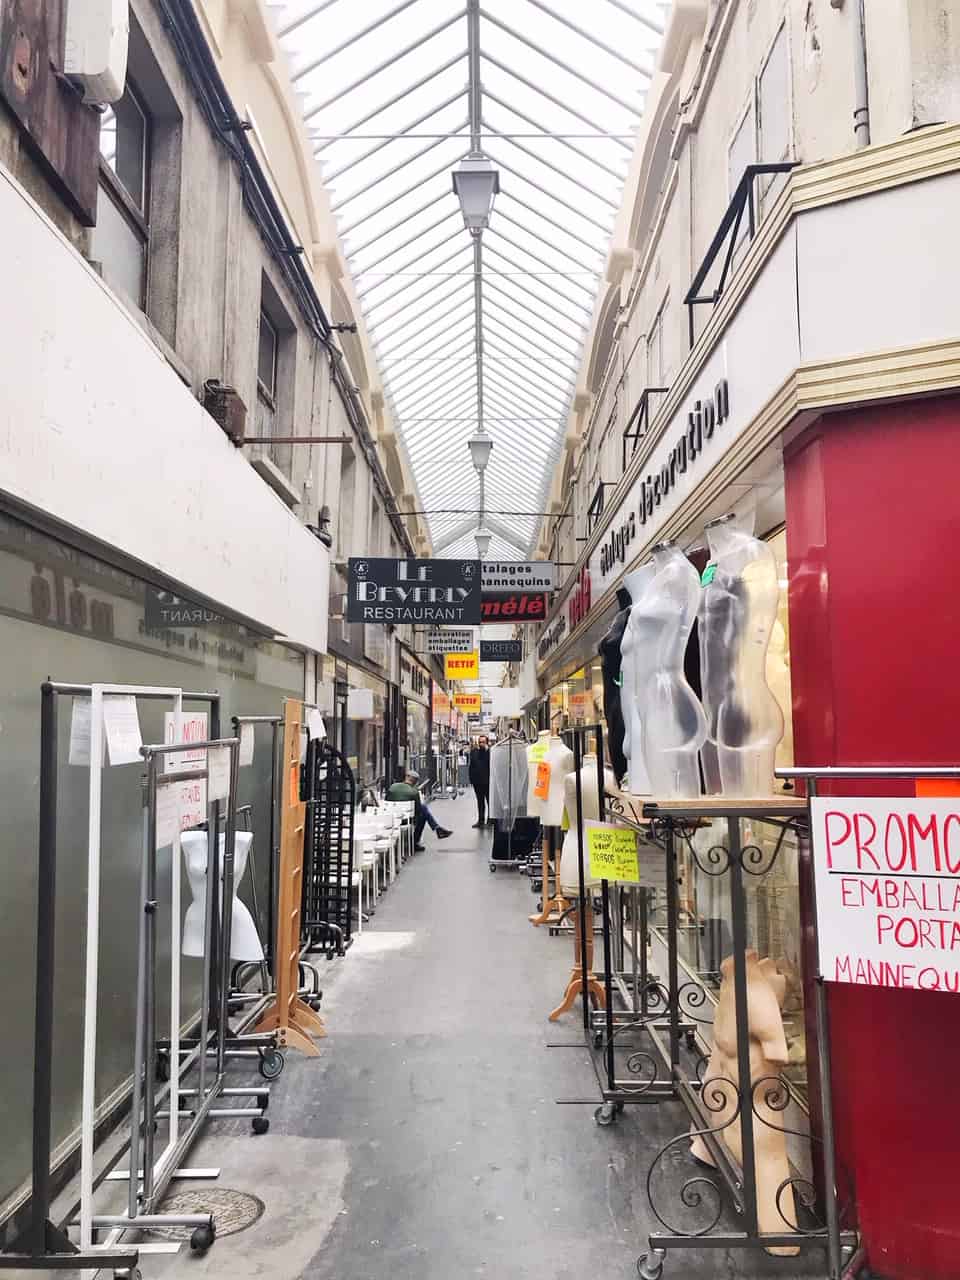 Passage du Caire is Paris' fashion covered passage | shopping in Paris 